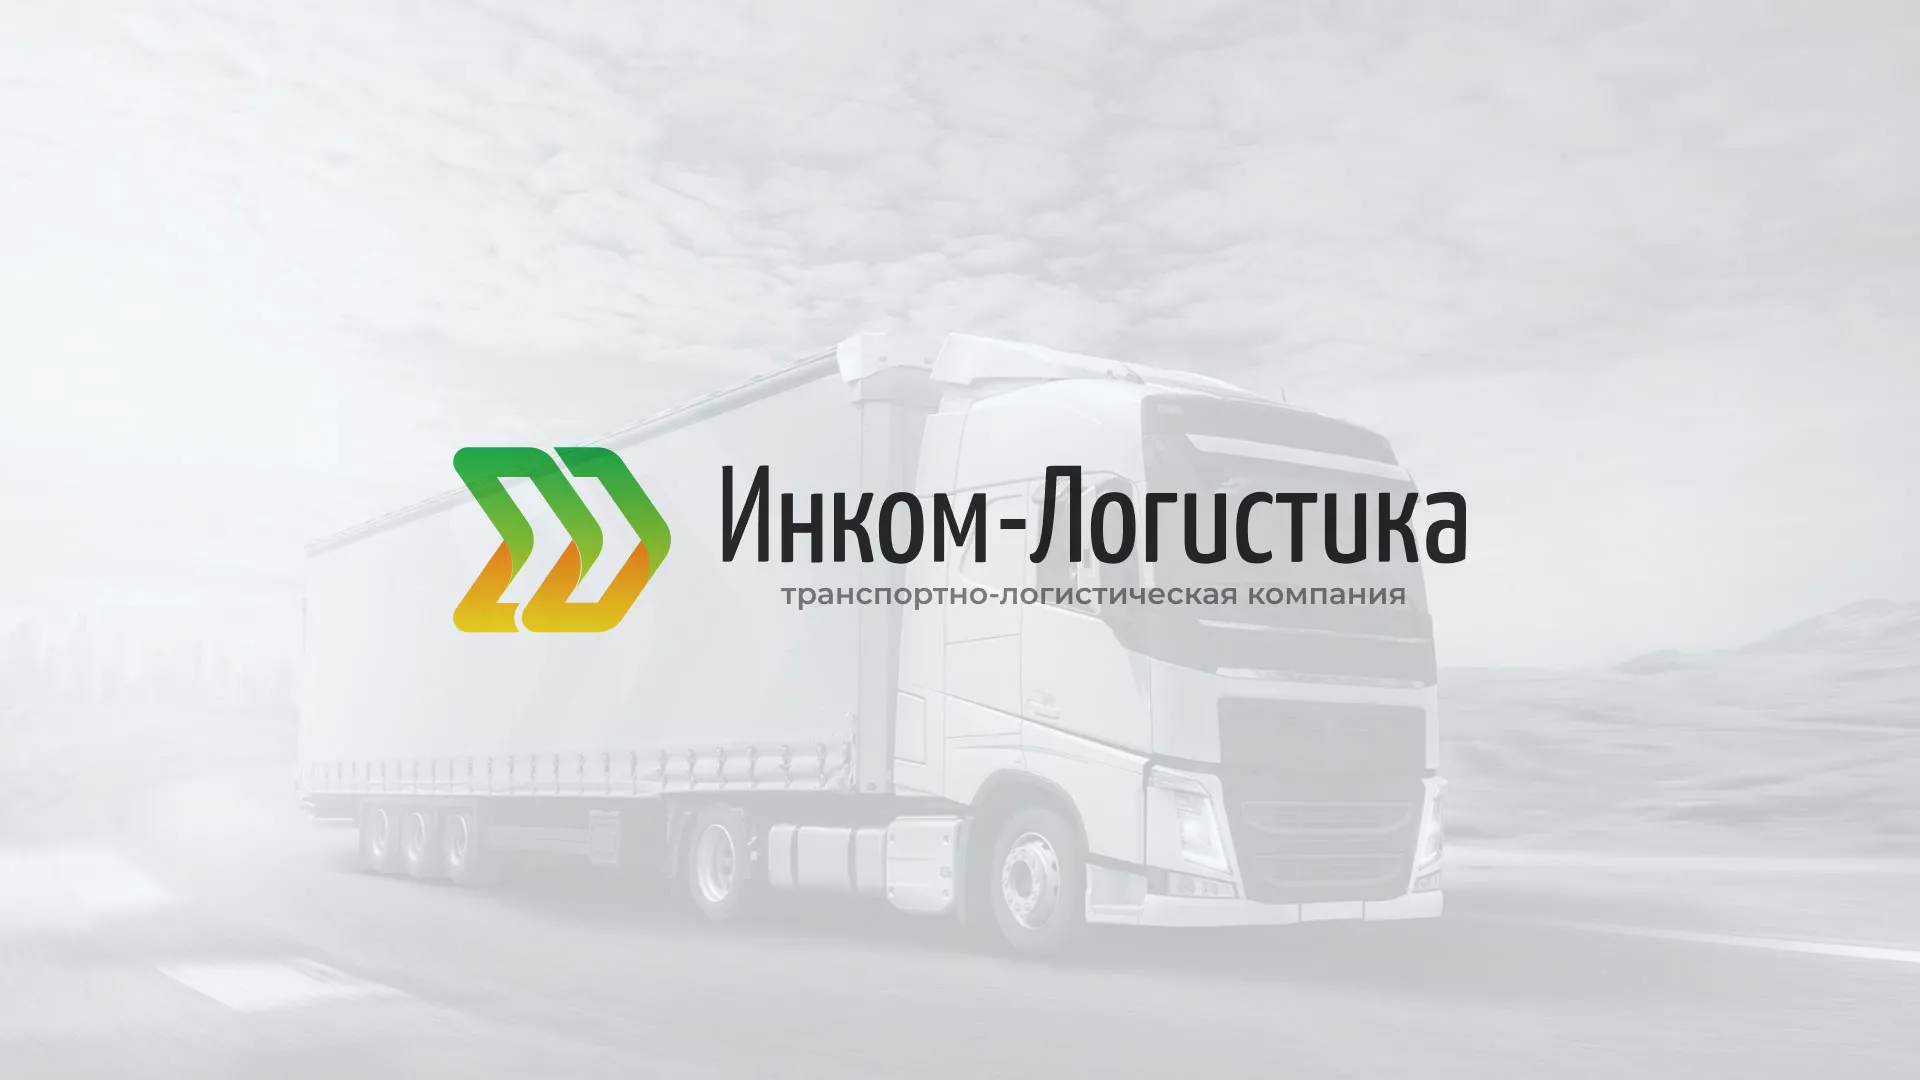 Разработка логотипа и сайта компании «Инком-Логистика» в Болохово